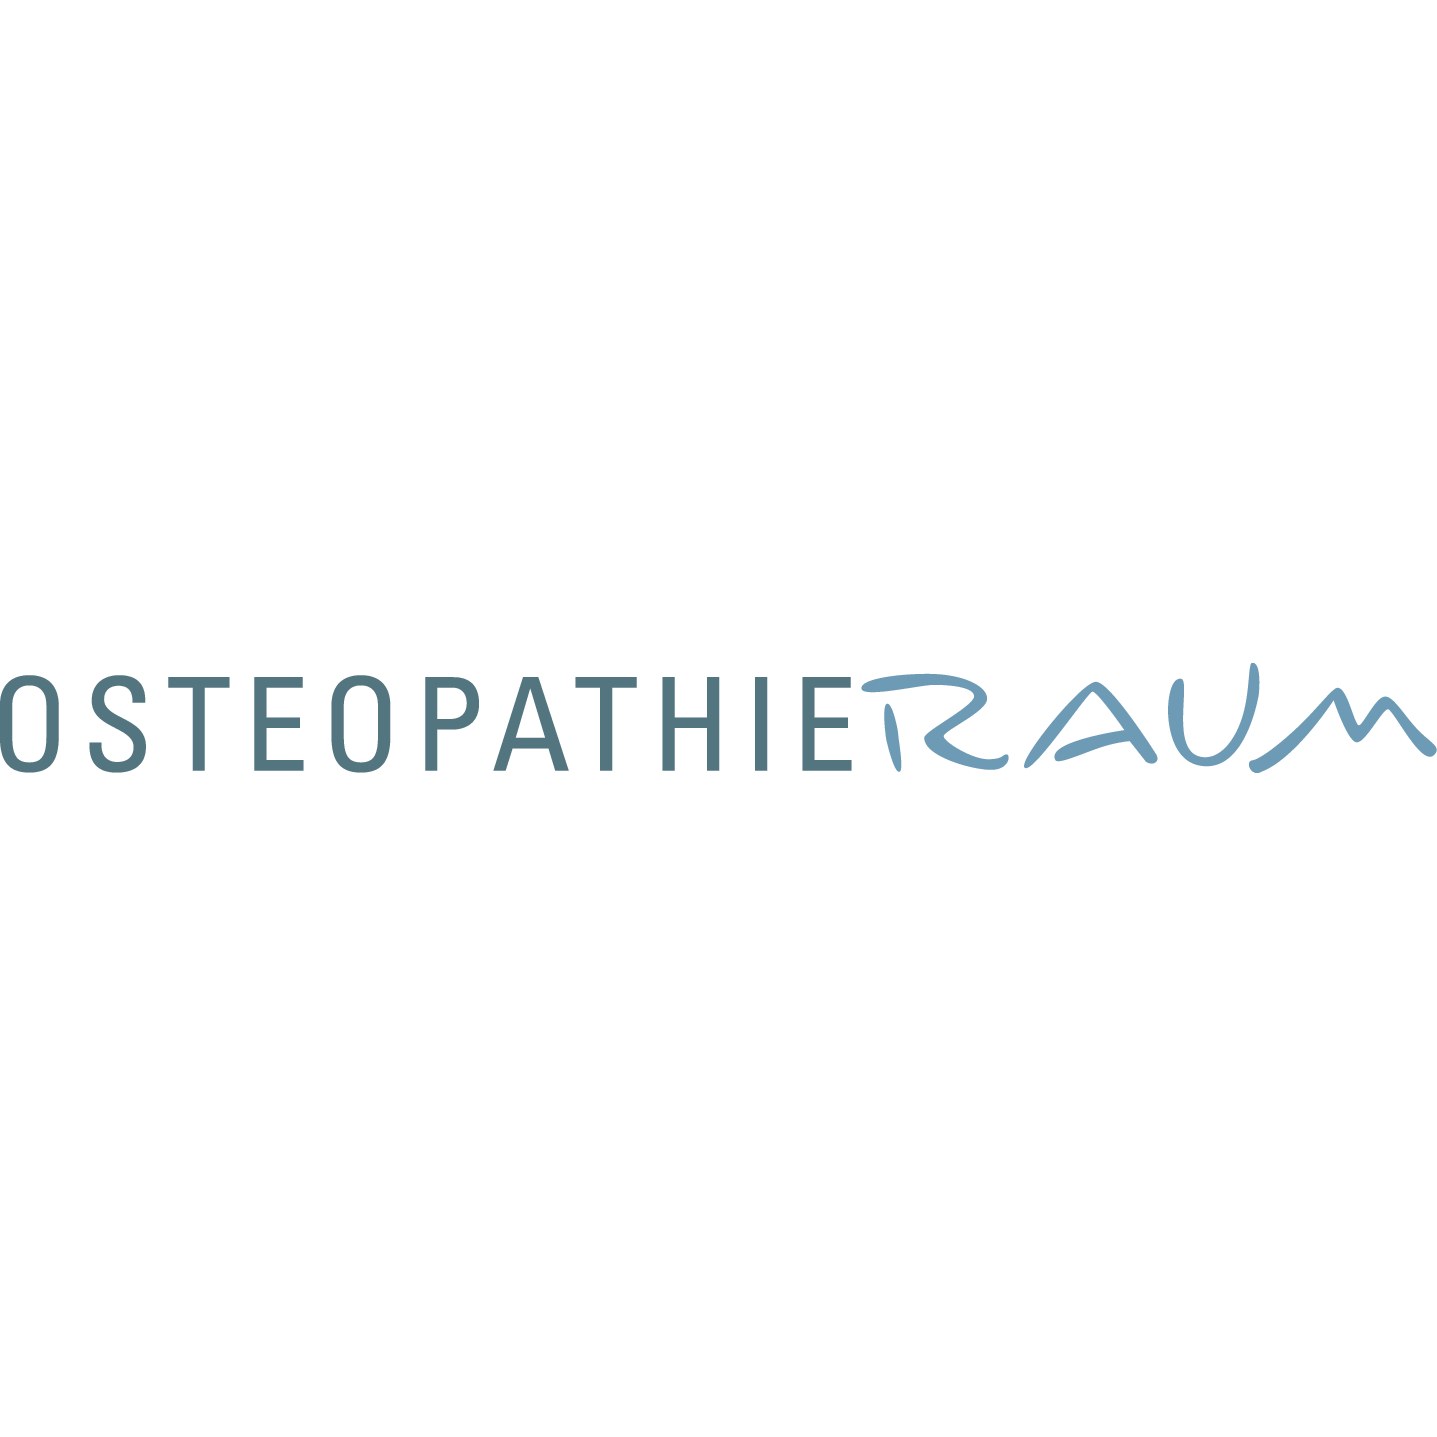 Logo OsteopathieRaum